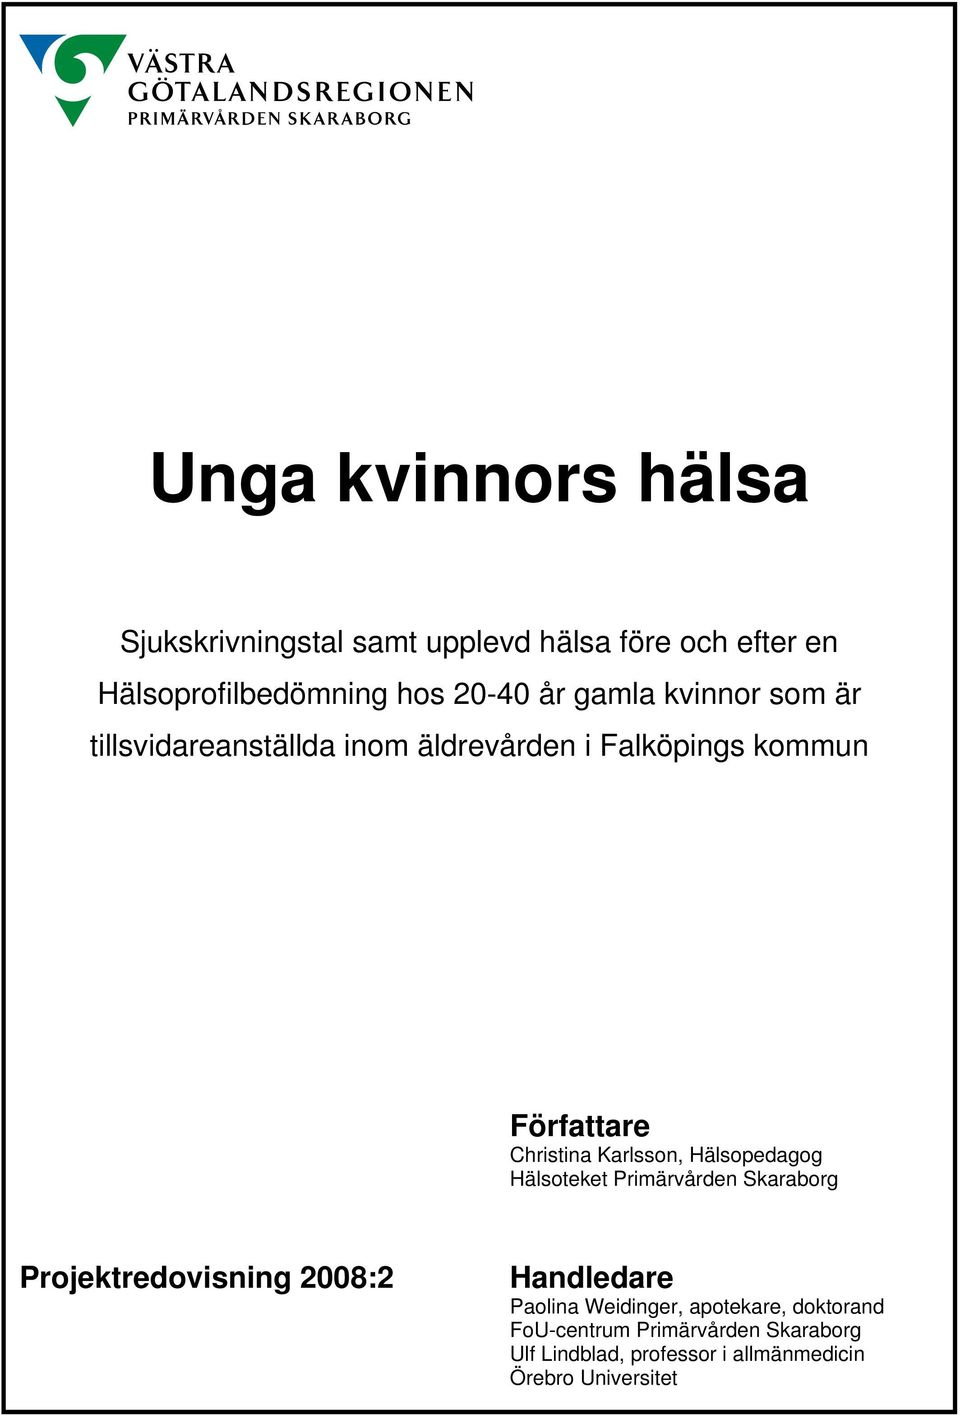 Karlsson, Hälsopedagog Hälsoteket Primärvården Skaraborg Projektredovisning 2008:2 Handledare Paolina